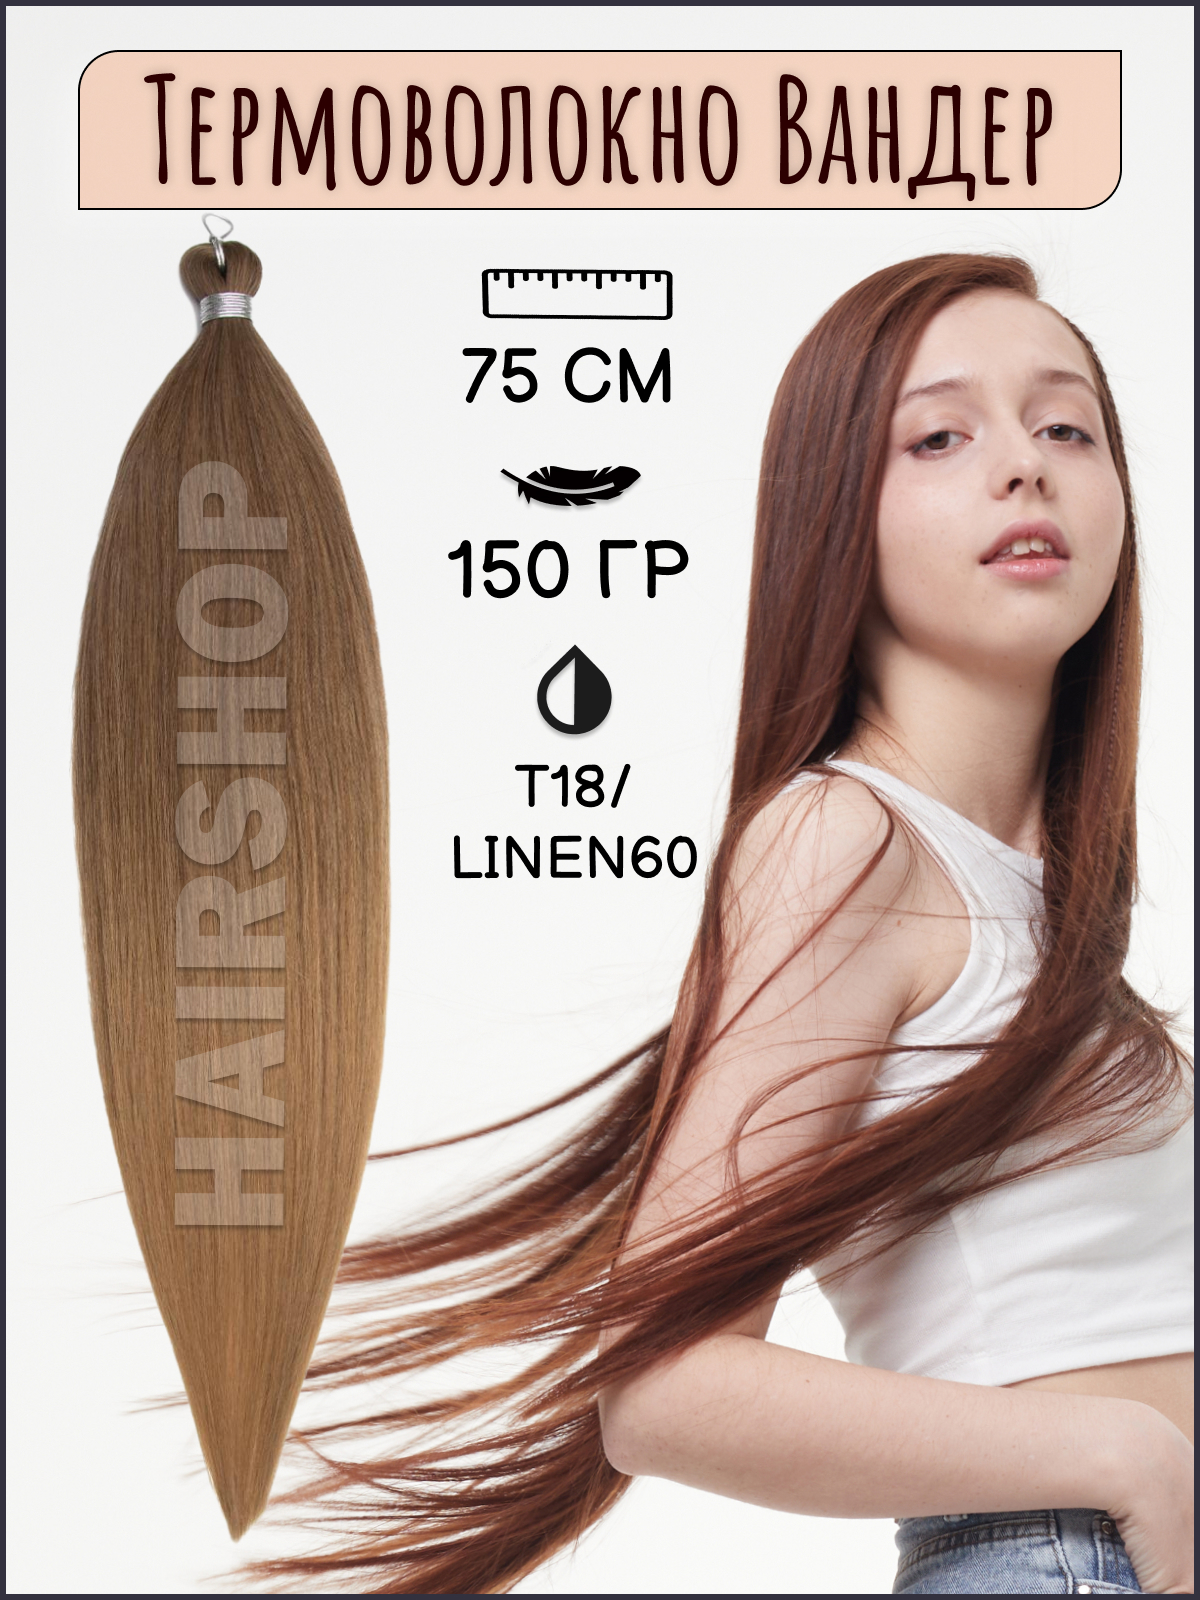 Термоволокно для наращивания Hairshop Вандер T18Linen60 150г 150см вольтарен эмульгель 2% 150г